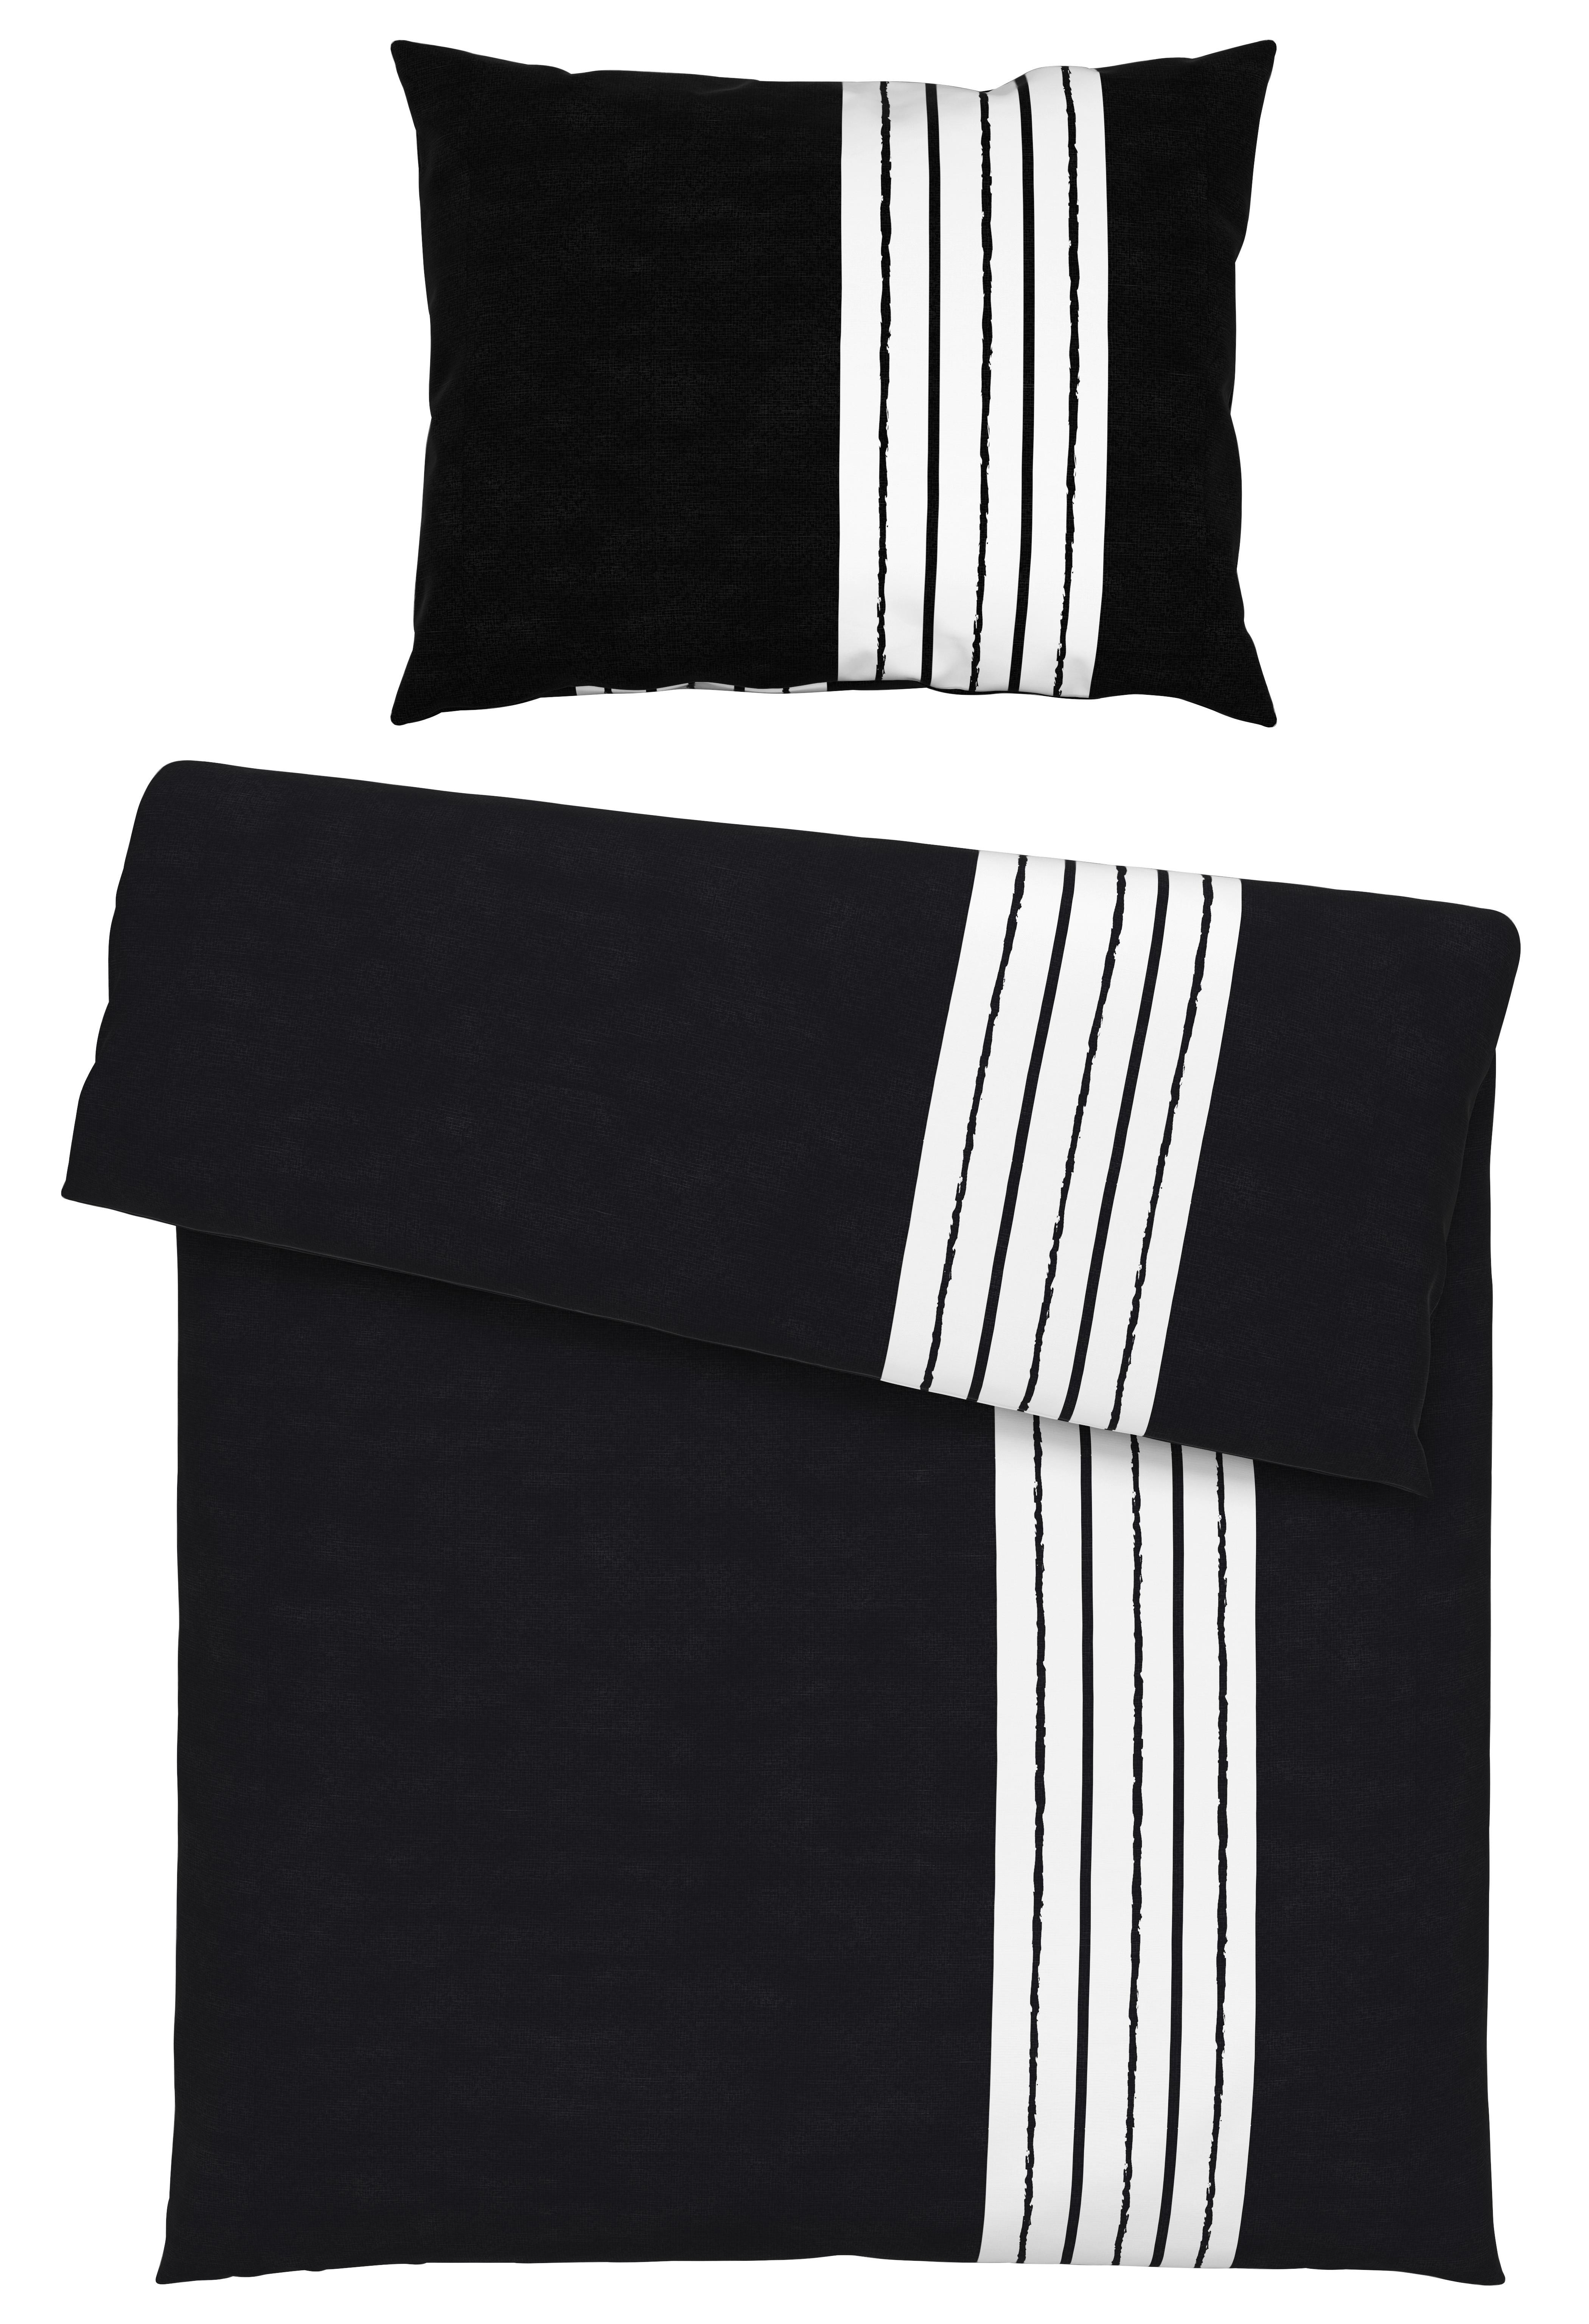 Bettwäsche Stripes in Schwarz ca. 140x200cm - Schwarz, MODERN, Textil (140/200cm) - Modern Living